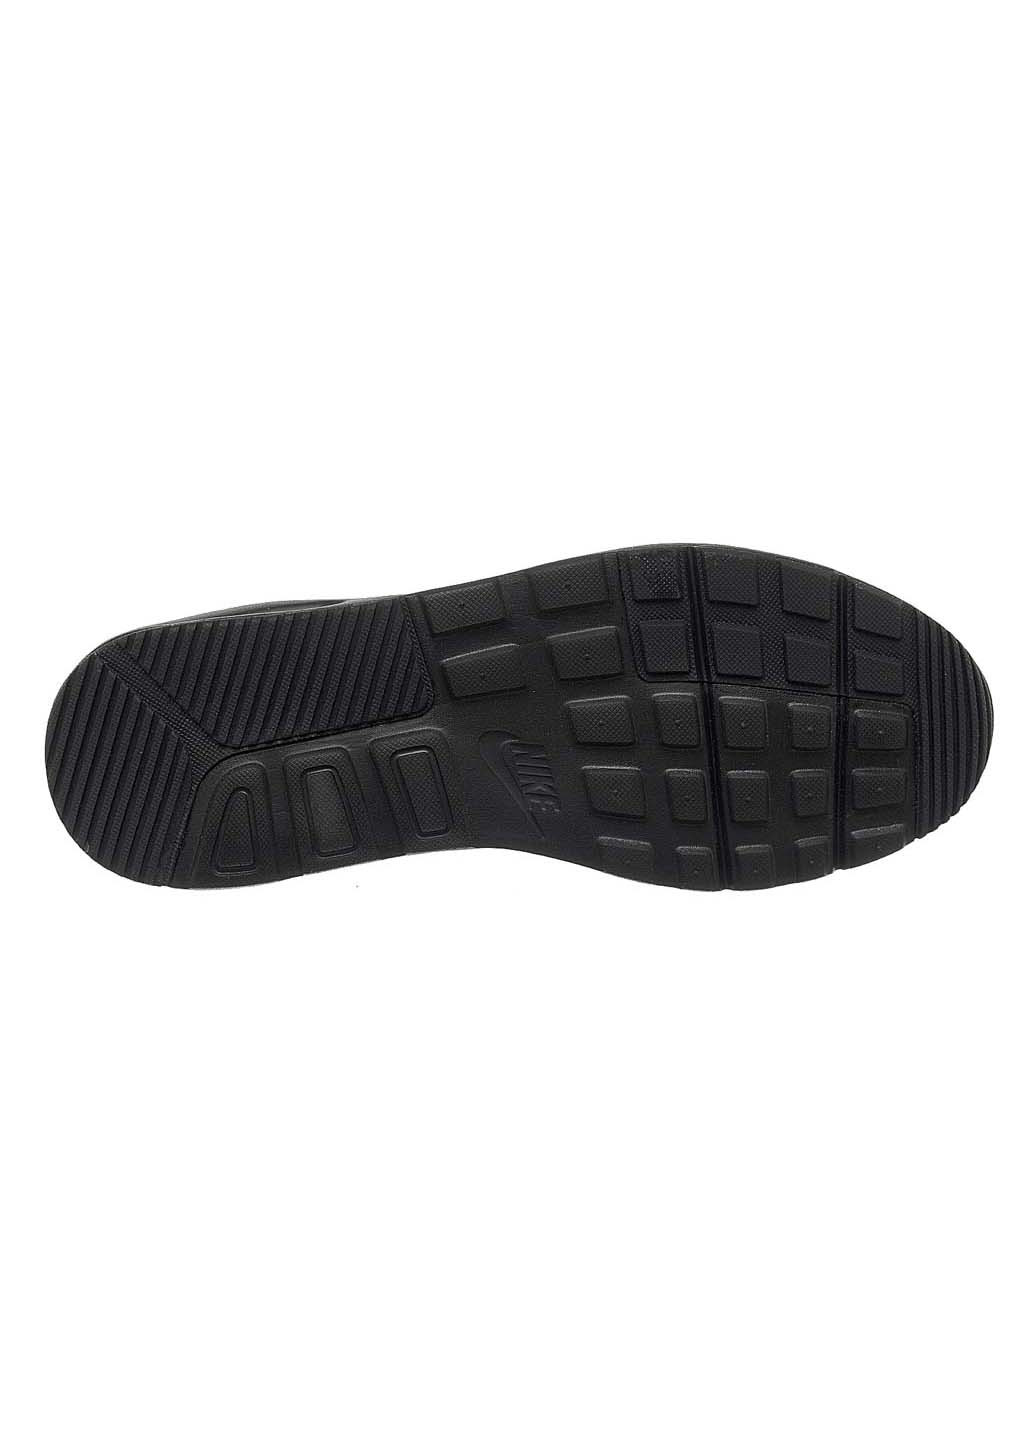 Черные демисезонные кроссовки мужские air max sc lea Nike